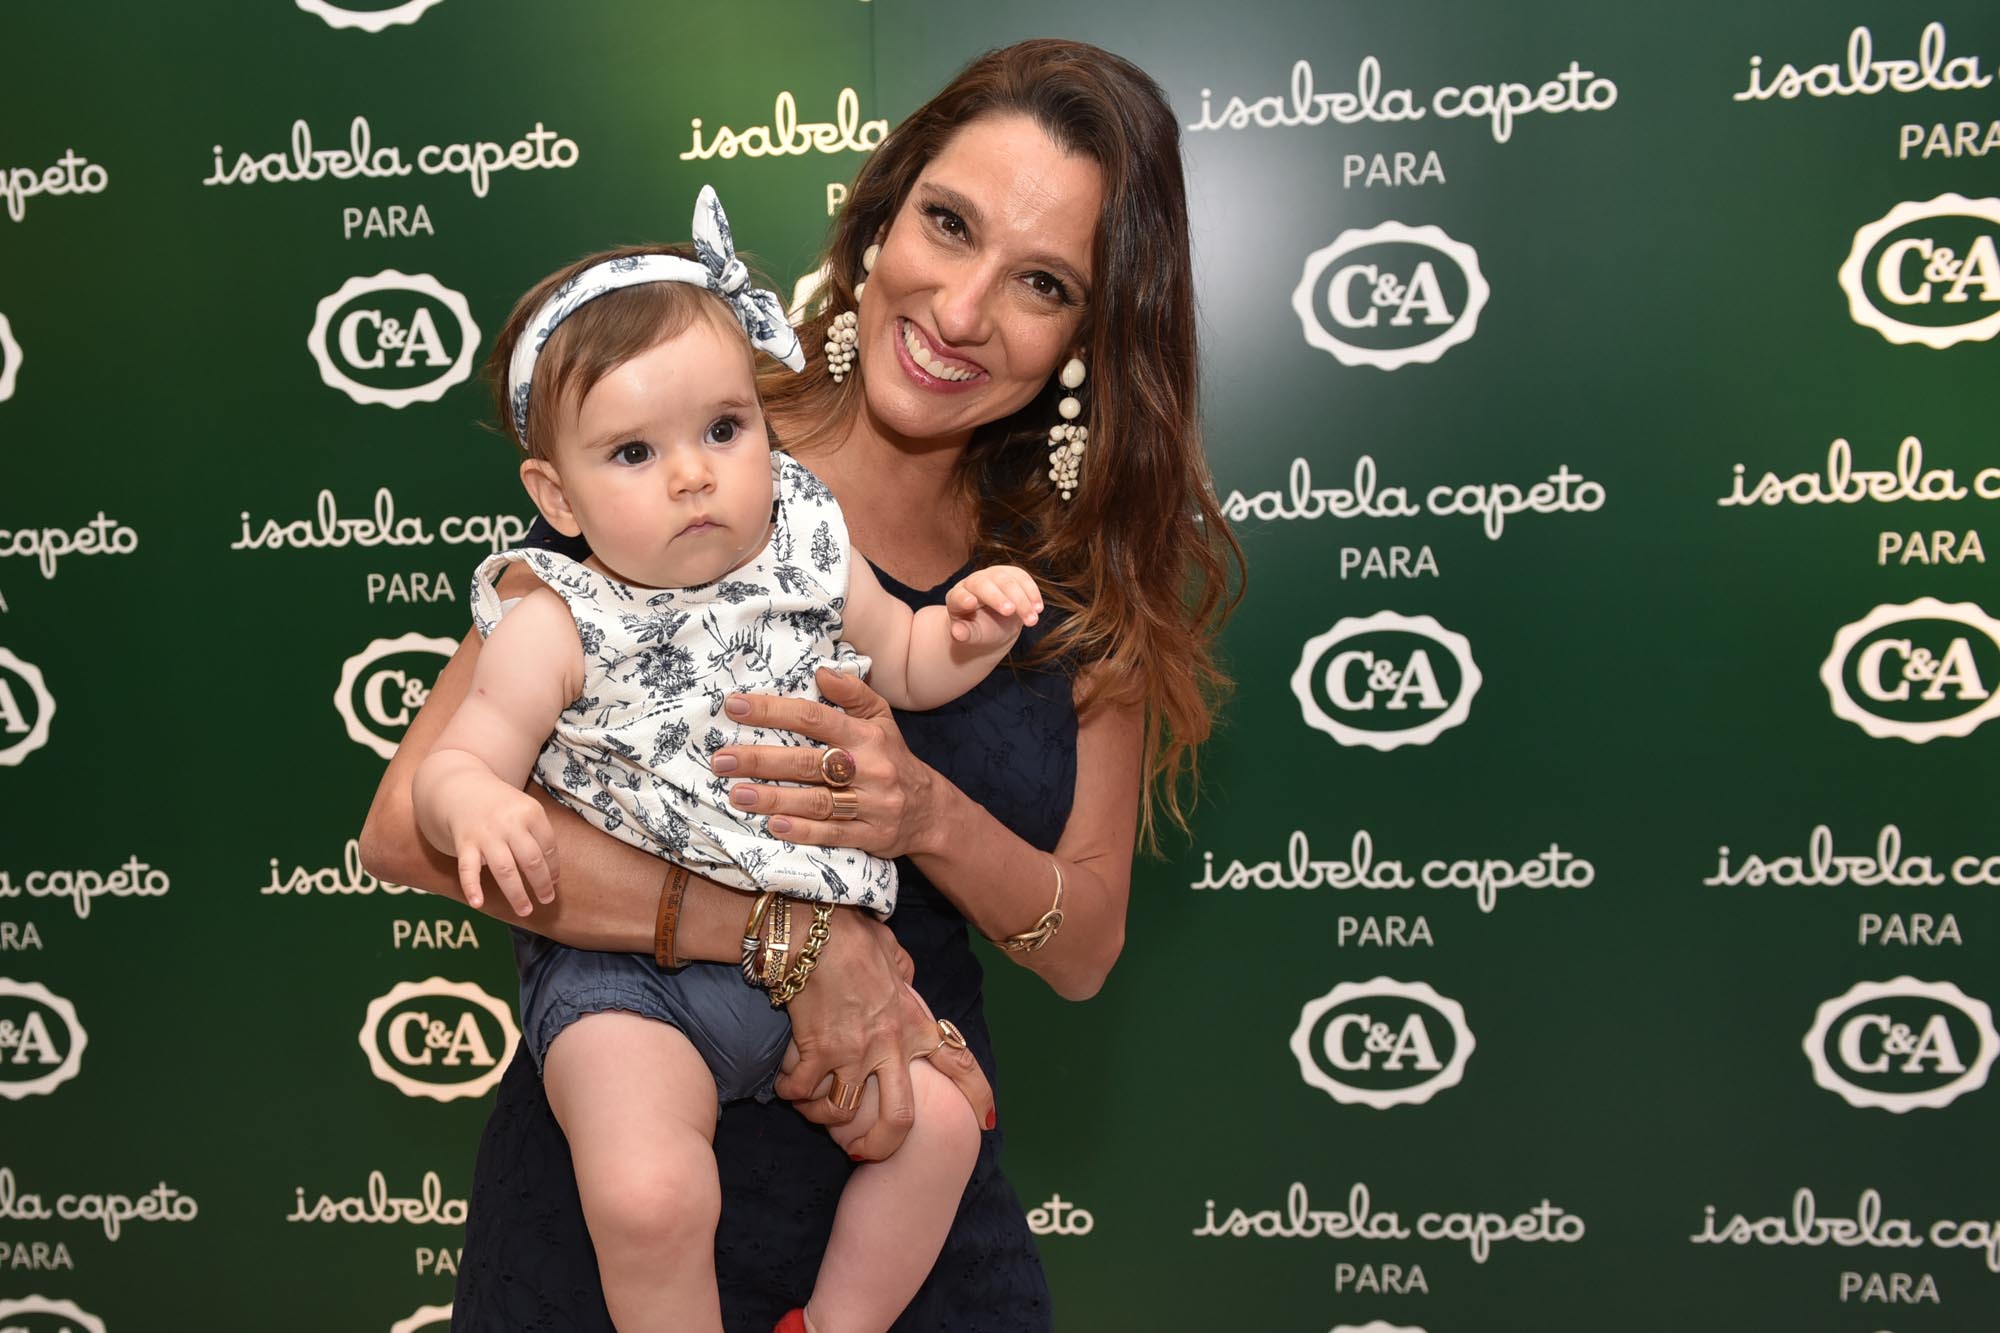 C&A armou pré-venda da coleção kids de Isabela Capeto em São Paulo